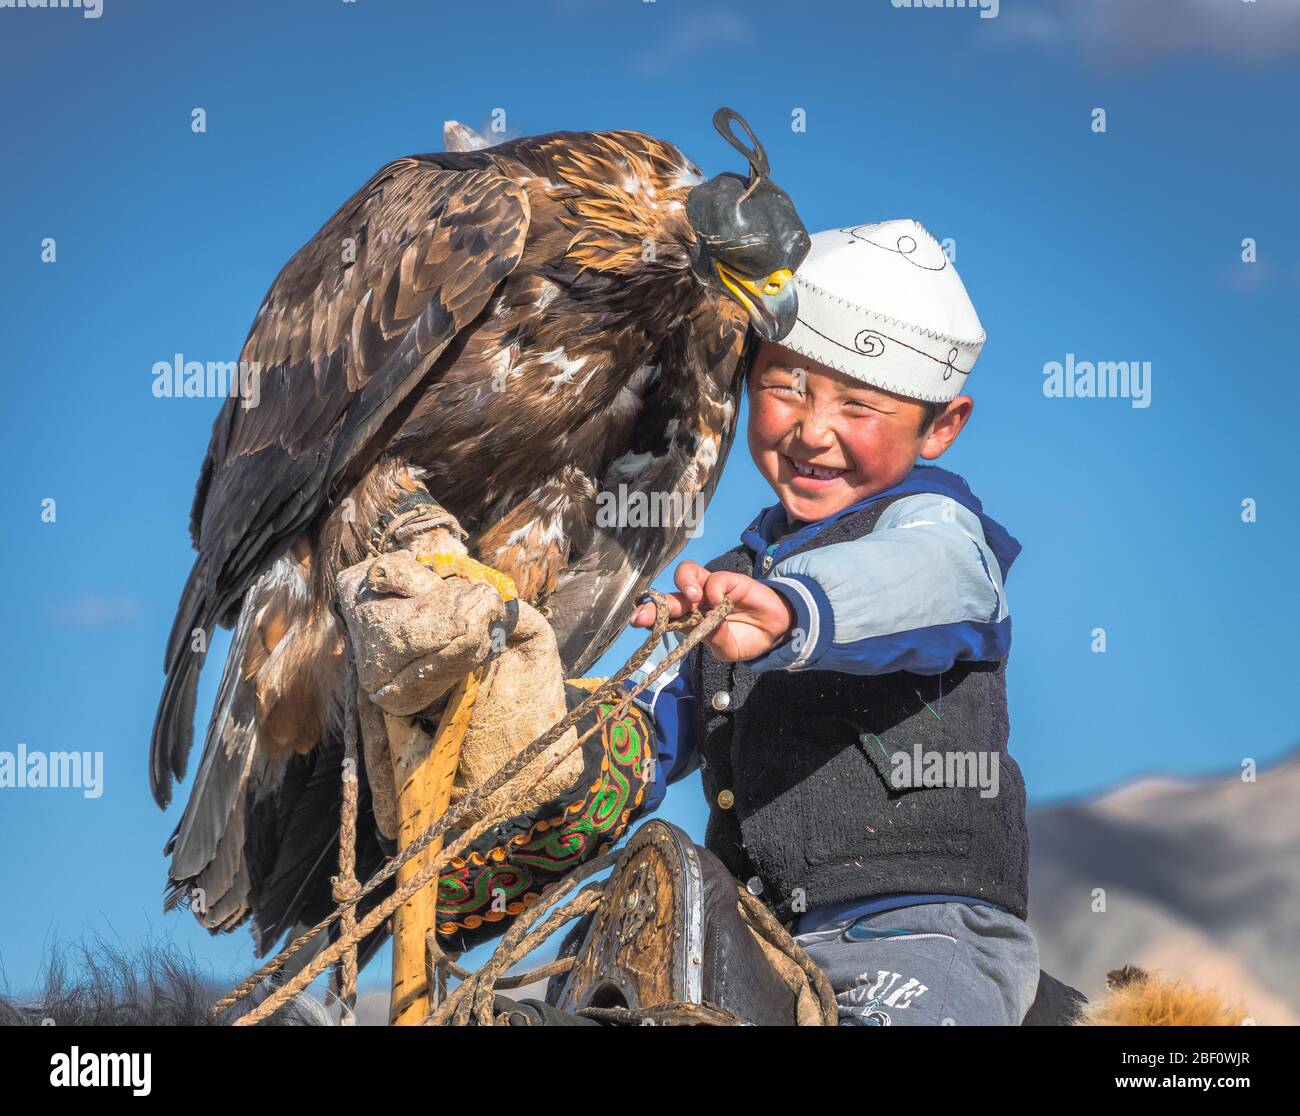 Cazador de águila joven, niño feliz con águila entrenada, provincia de  Bajan-Oelgii, Mongolia Fotografía de stock - Alamy